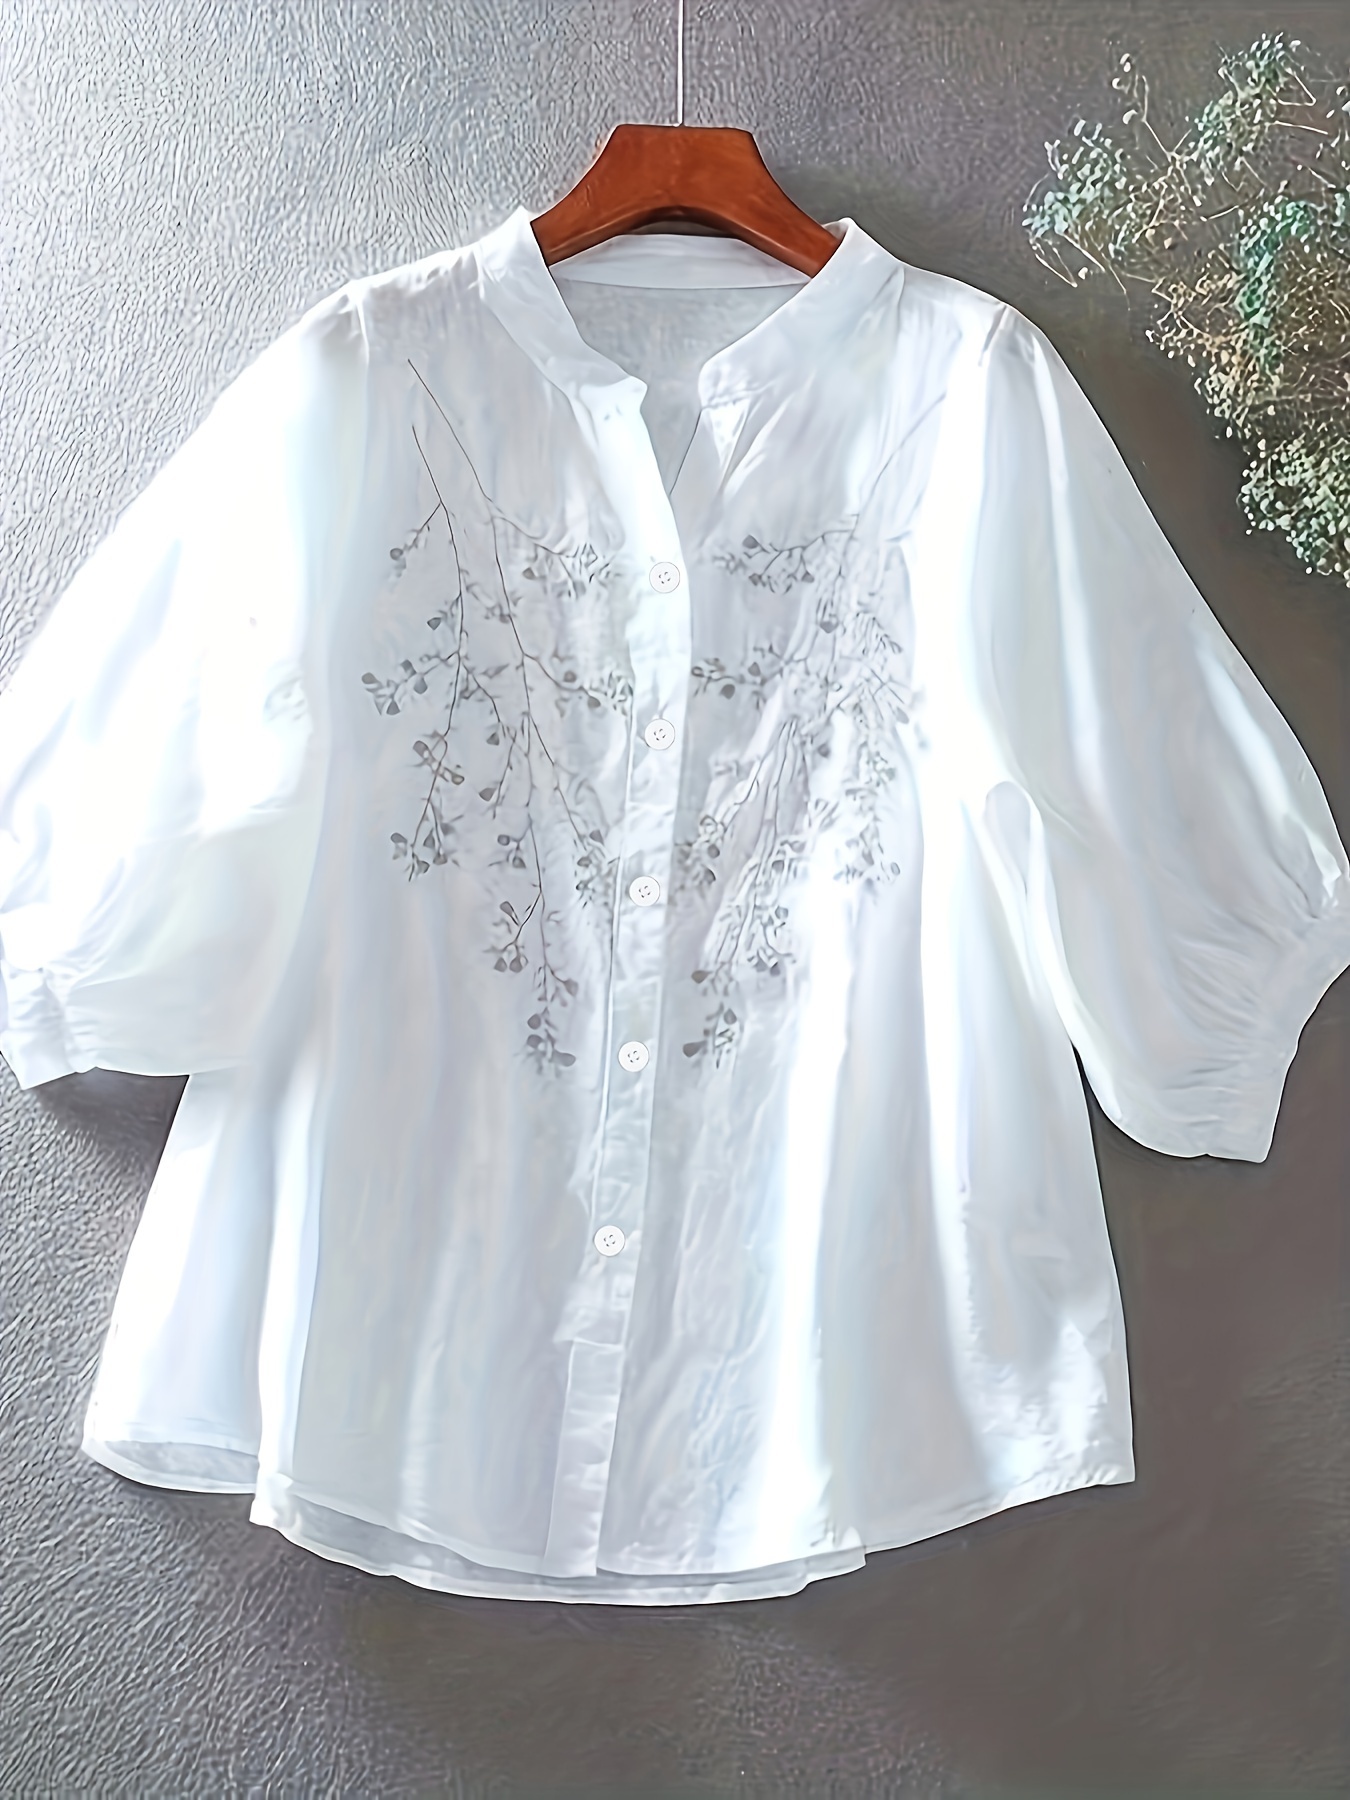 Blusa simples com padrão floral, blusa elegante com gola frontal e botão, roupas femininas